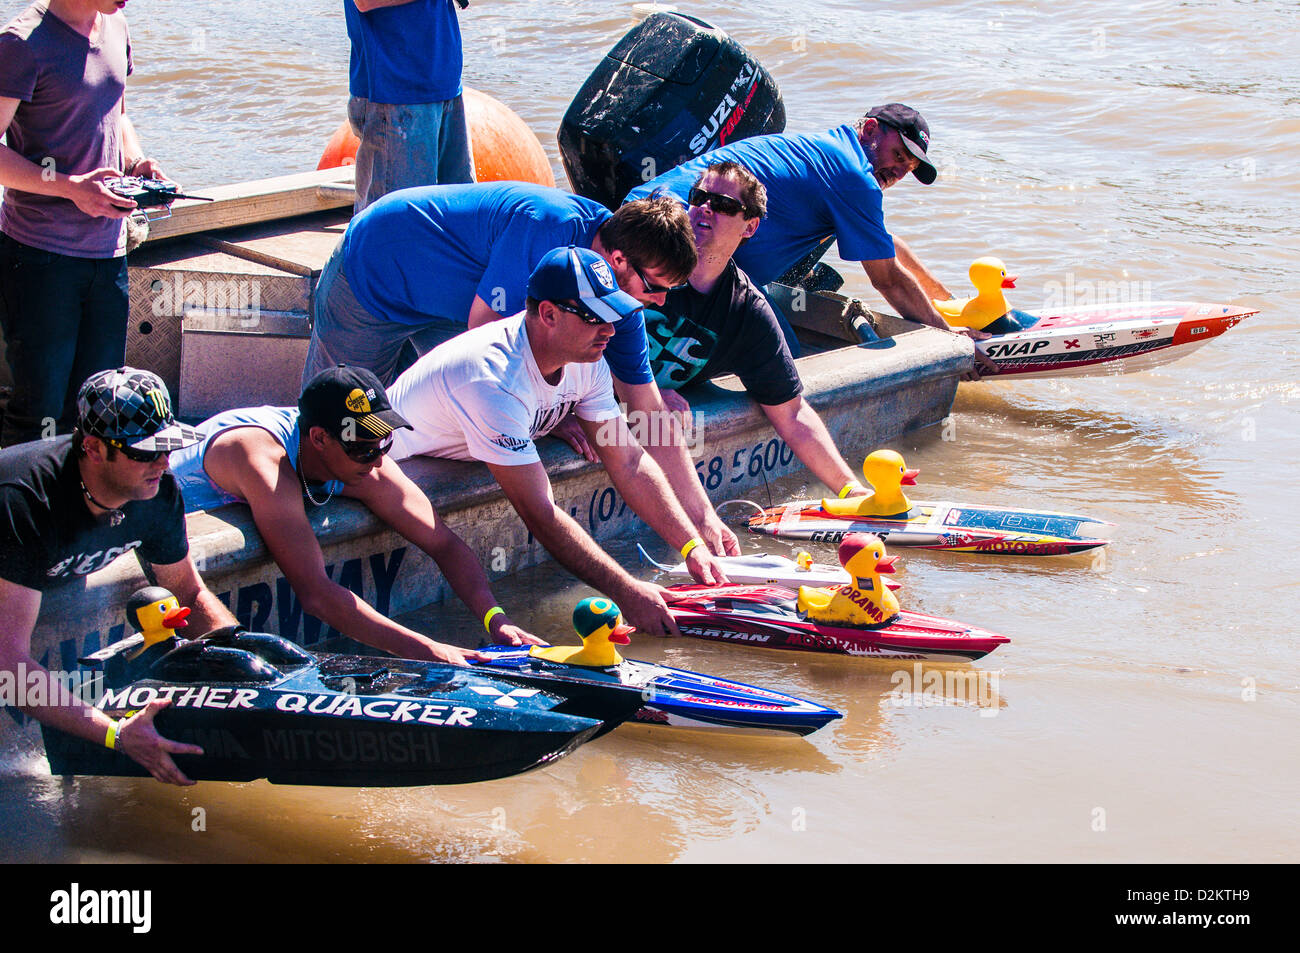 Ducky Rubby boat race, fleuve de Brisbane, Queensland, Australie Banque D'Images